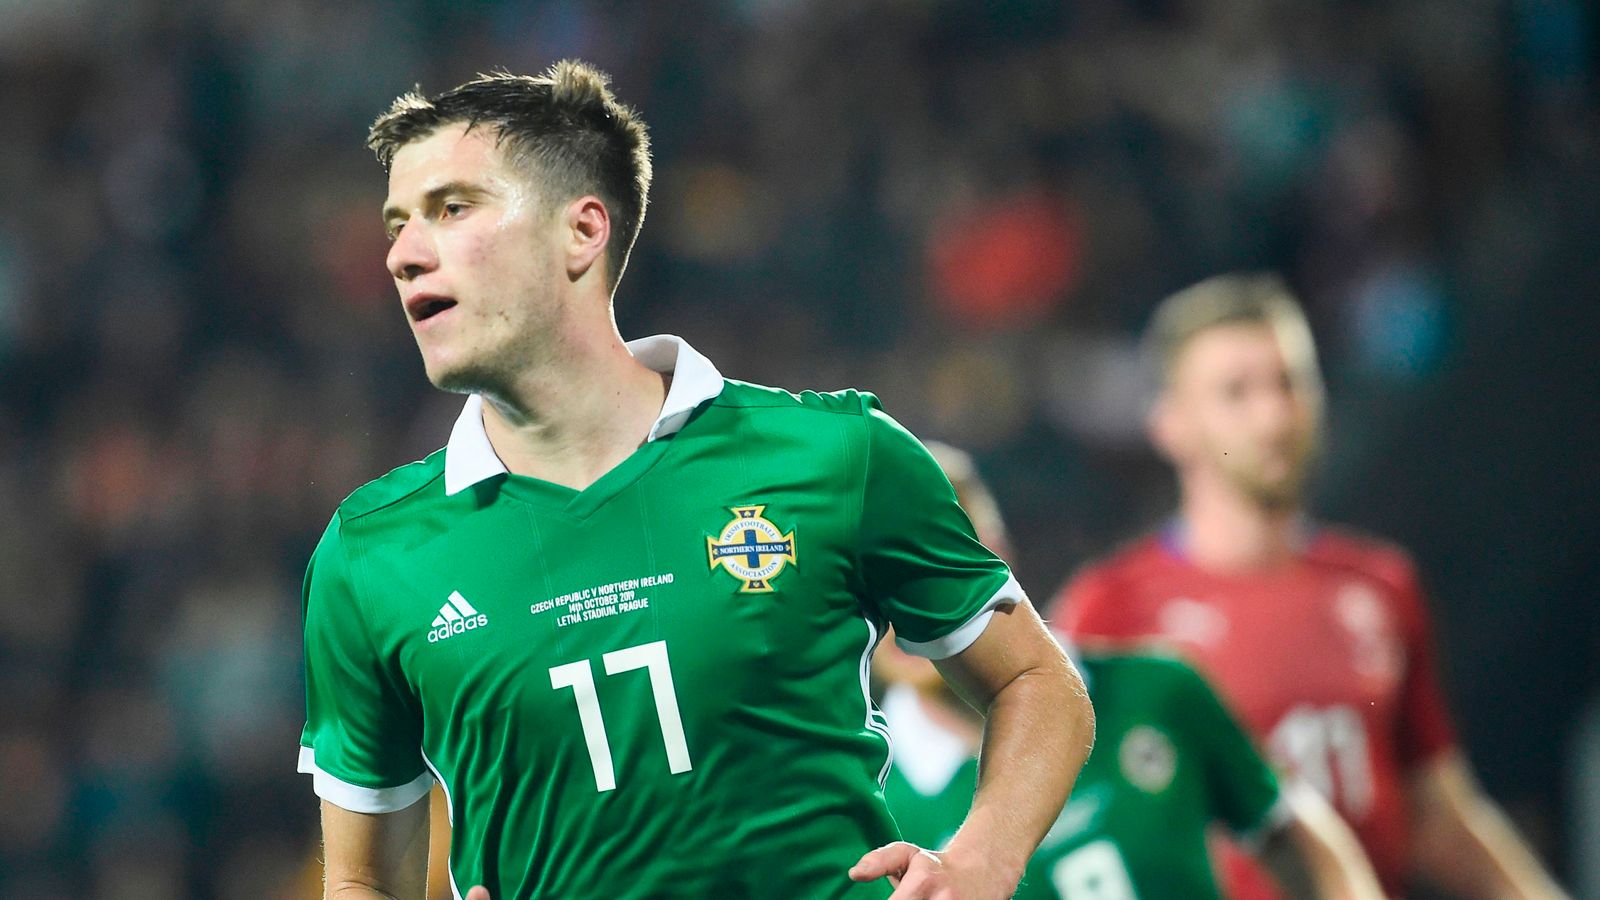 Česká republika 2-3 Severní Irsko: Paddy McNair skóroval dvakrát, protože návštěvníci boj přežili |  fotbalové zprávy